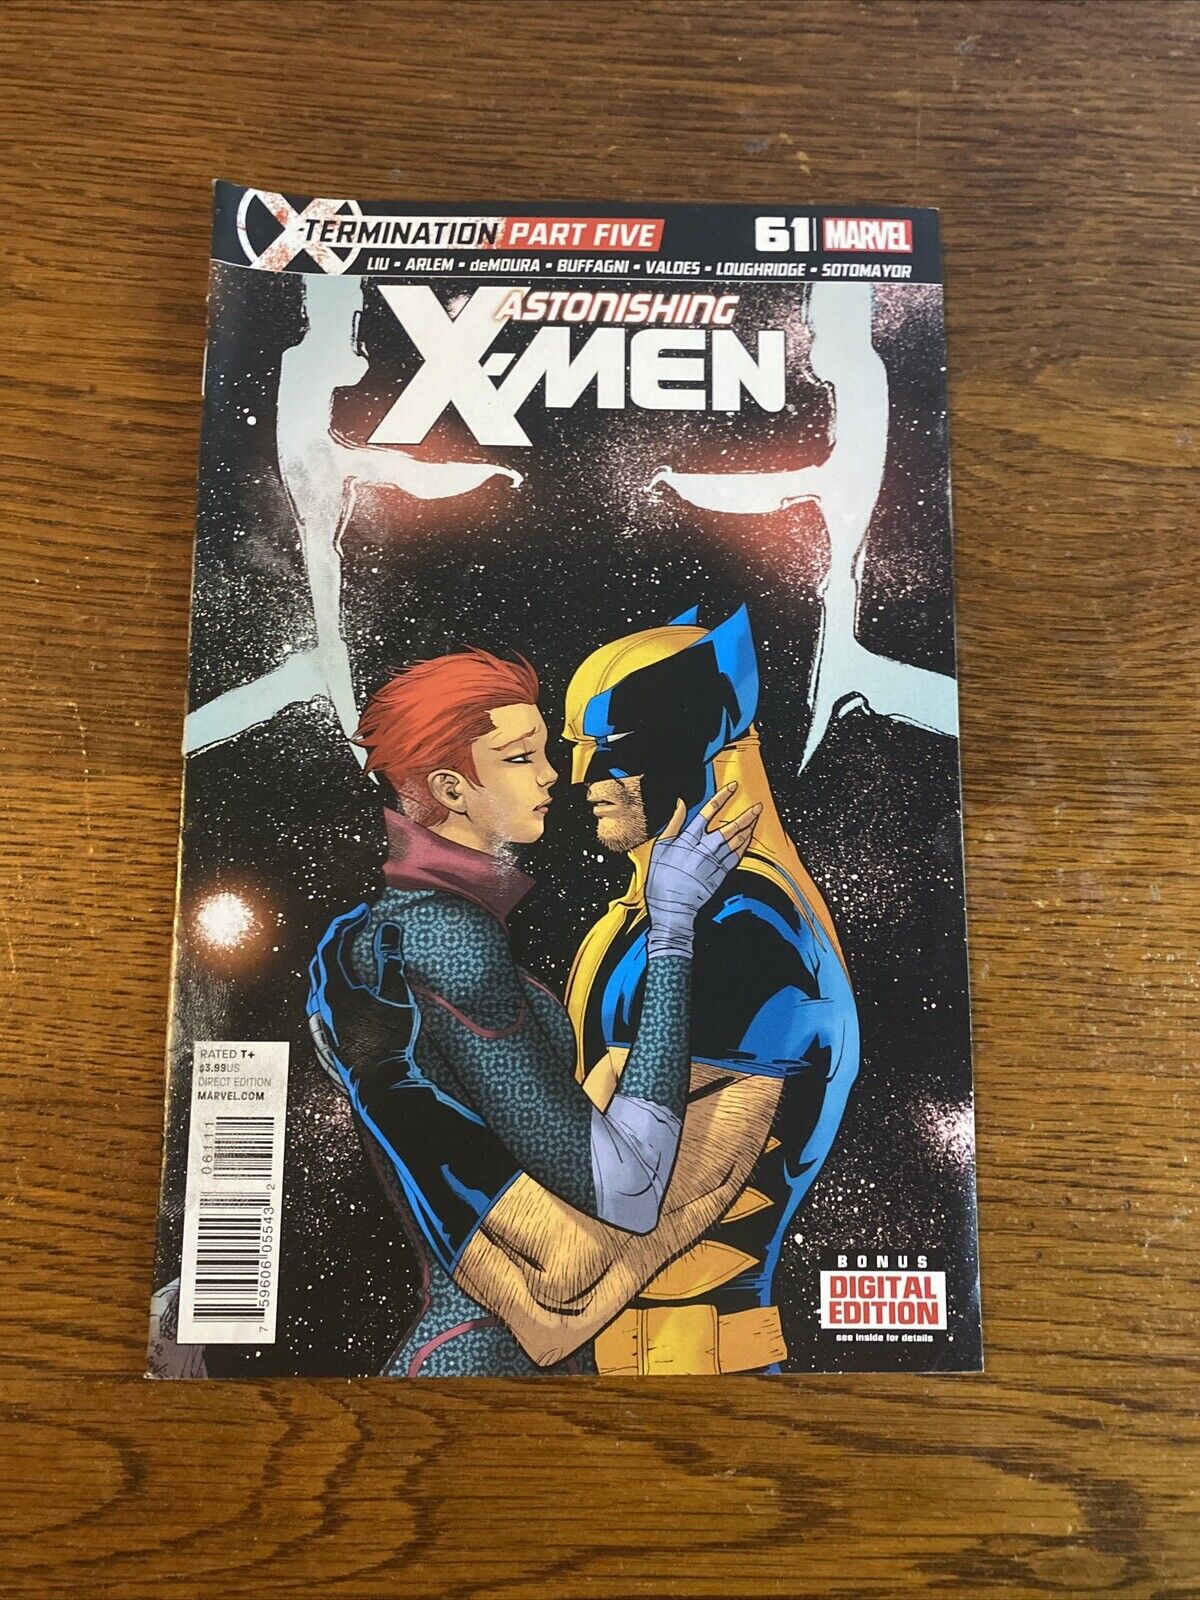 ASTONISHING X-MEN #61 VOL. 3 MARVEL COMIC BOOK